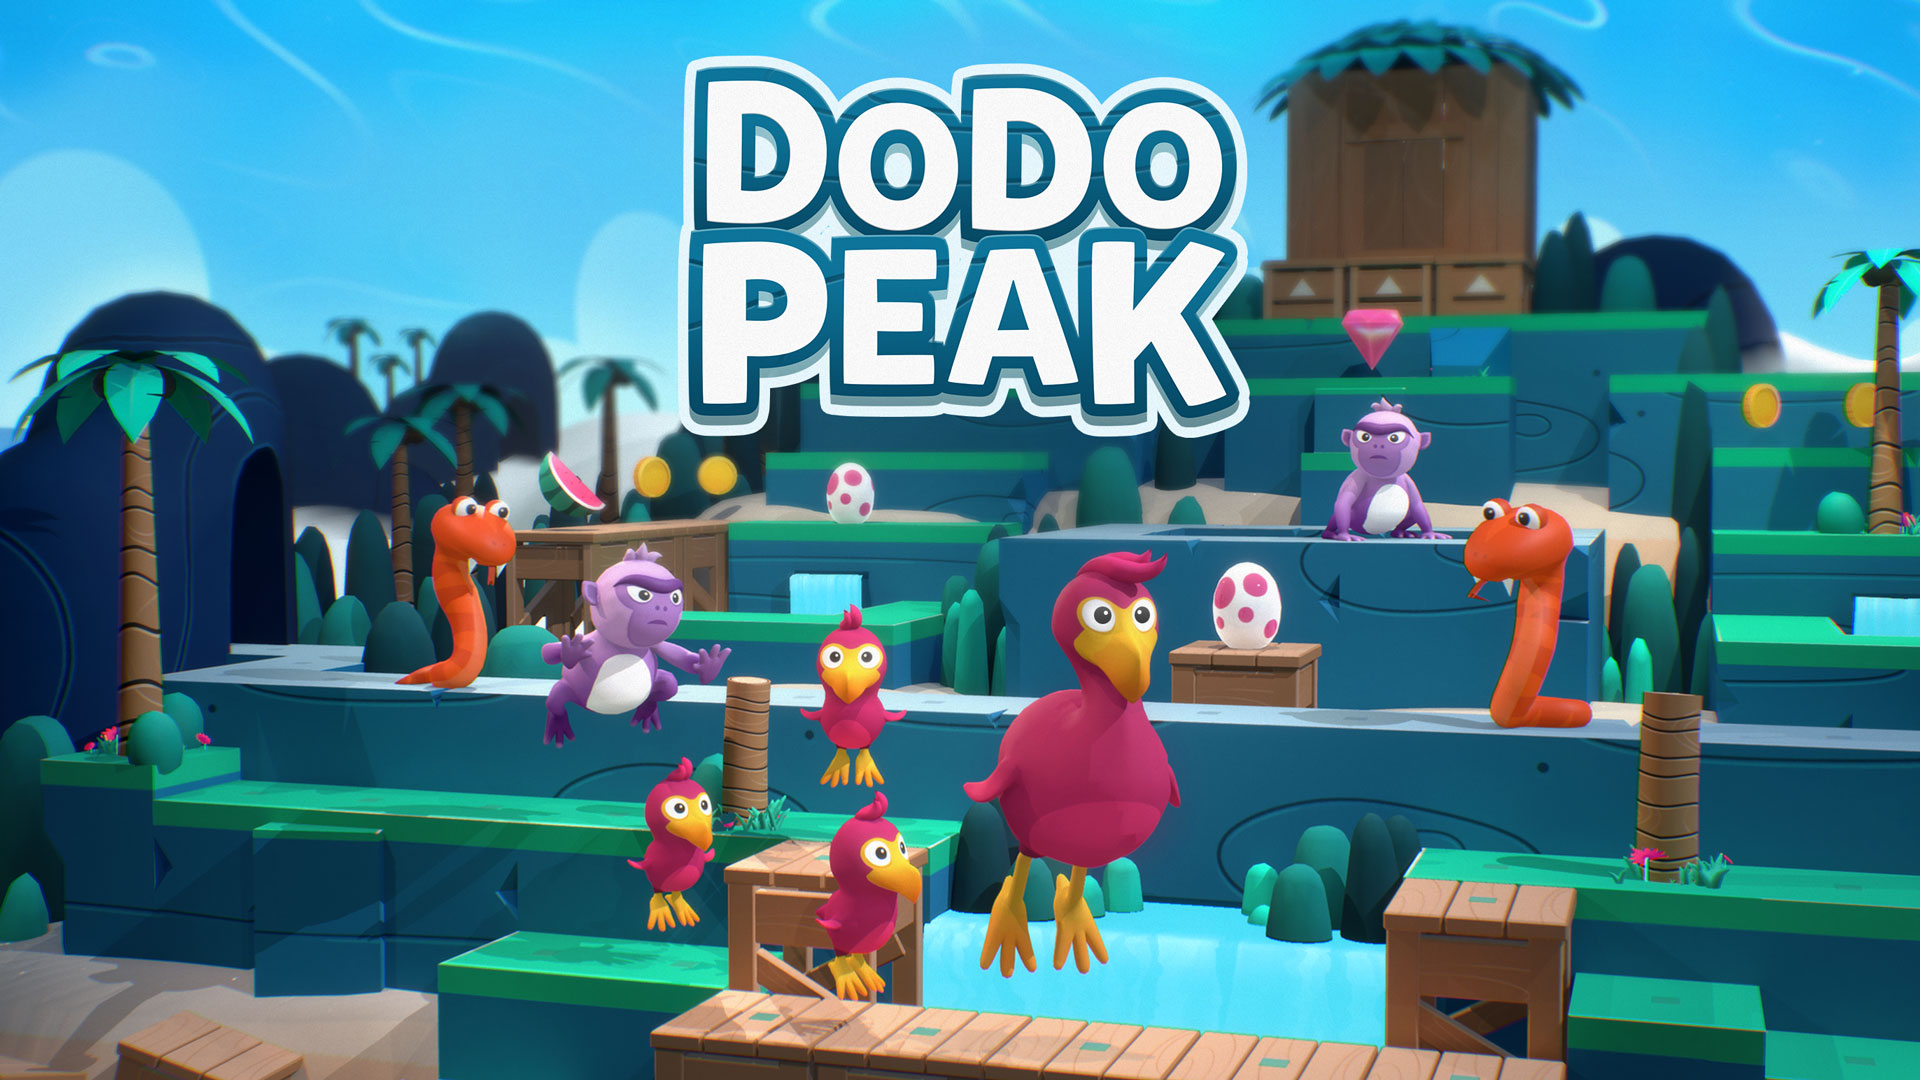 Dodo Peak 'Pre-Purchase Announcement' trailer